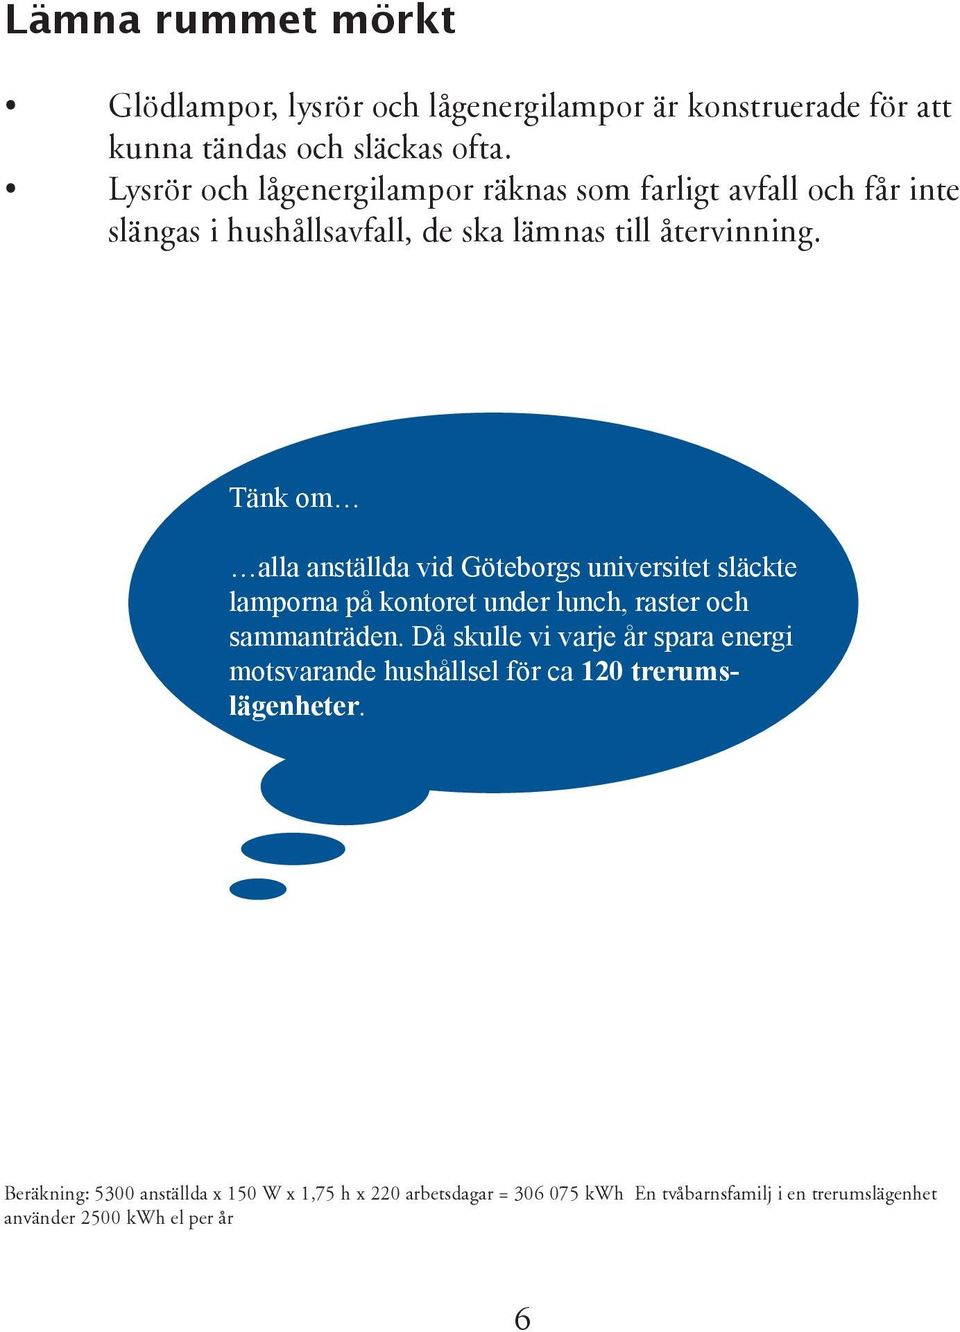 Tänk om alla anställda vid Göteborgs universitet släckte lamporna på kontoret under lunch, raster och sammanträden.